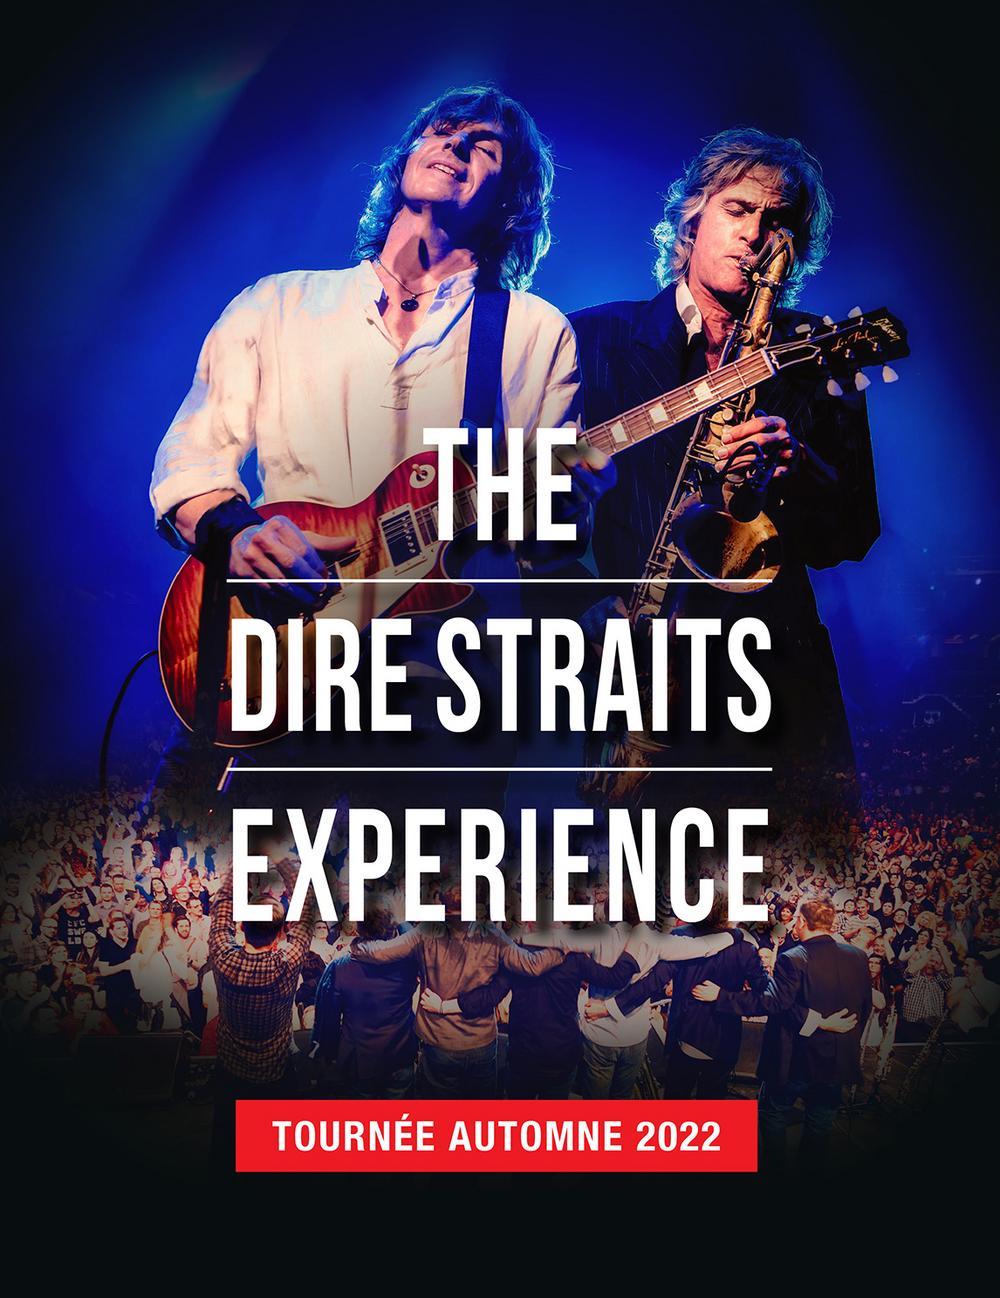 Concert The Dire Straits Experience Tours vendredi 7 octobre 2022